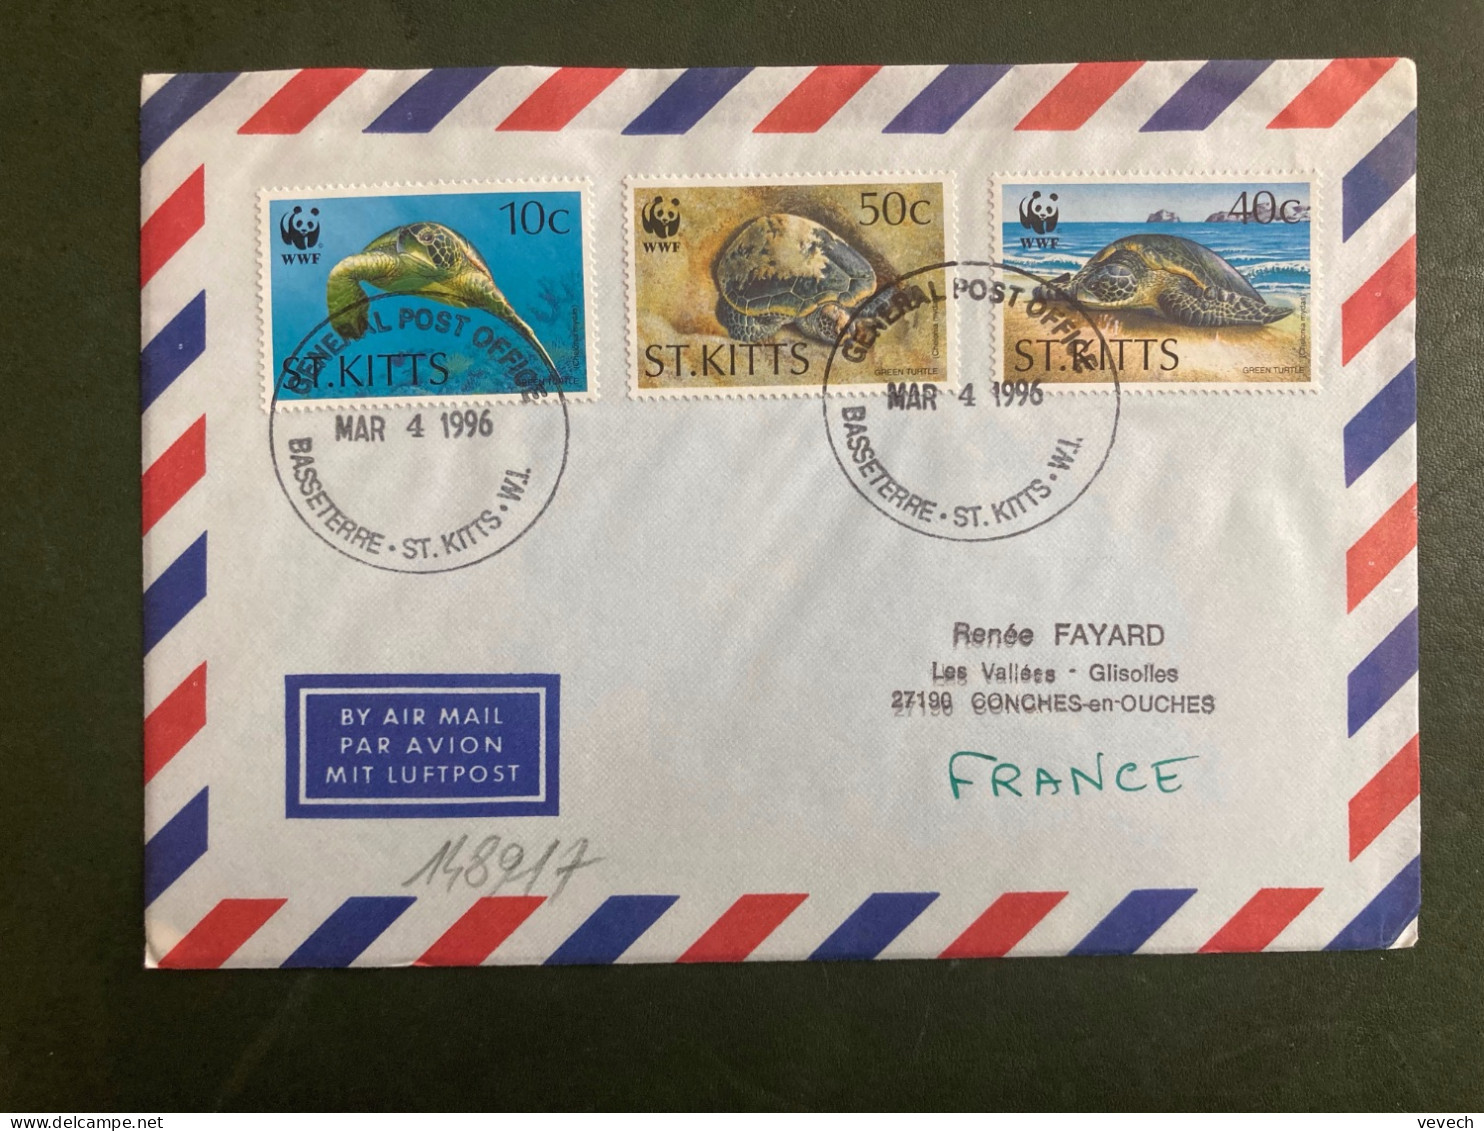 LETTRE Par Avion Pour La FRANCE TP TORTUE 10c + 50c + 40c OBL. MAR 4 1996 BASSETERRE - St.Kitts And Nevis ( 1983-...)